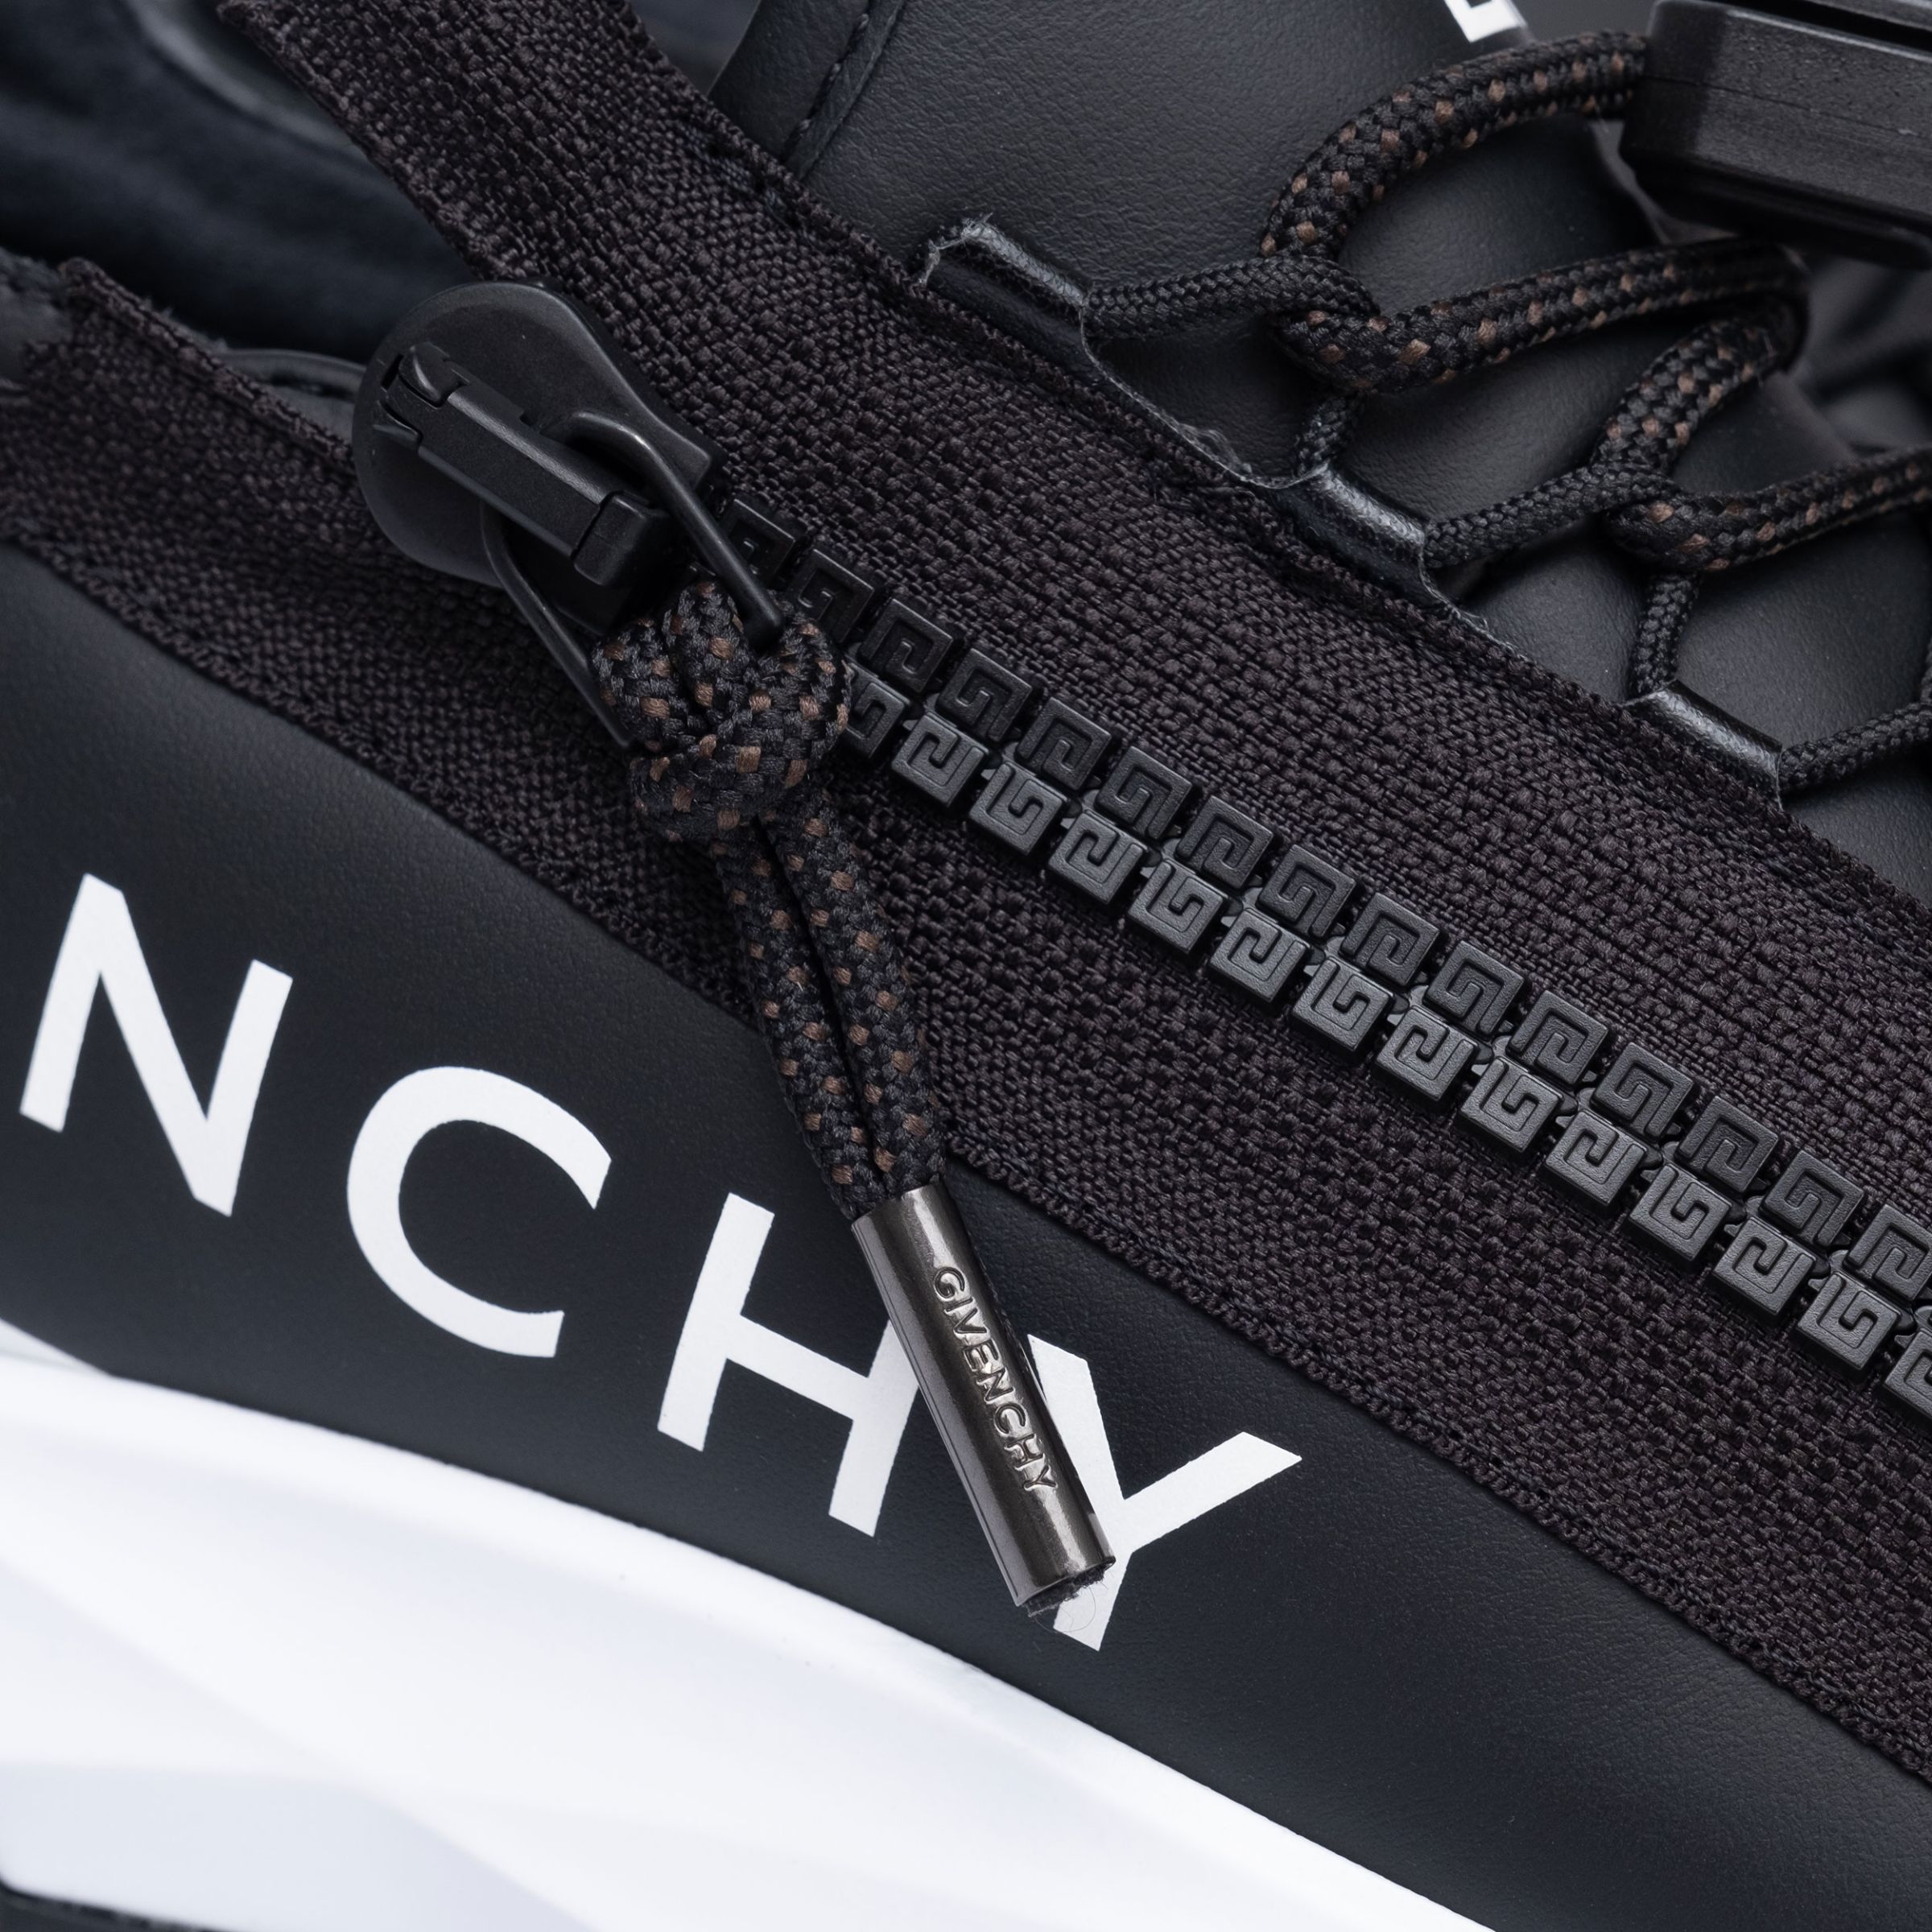 Кросівки Givenchy чорно-білі